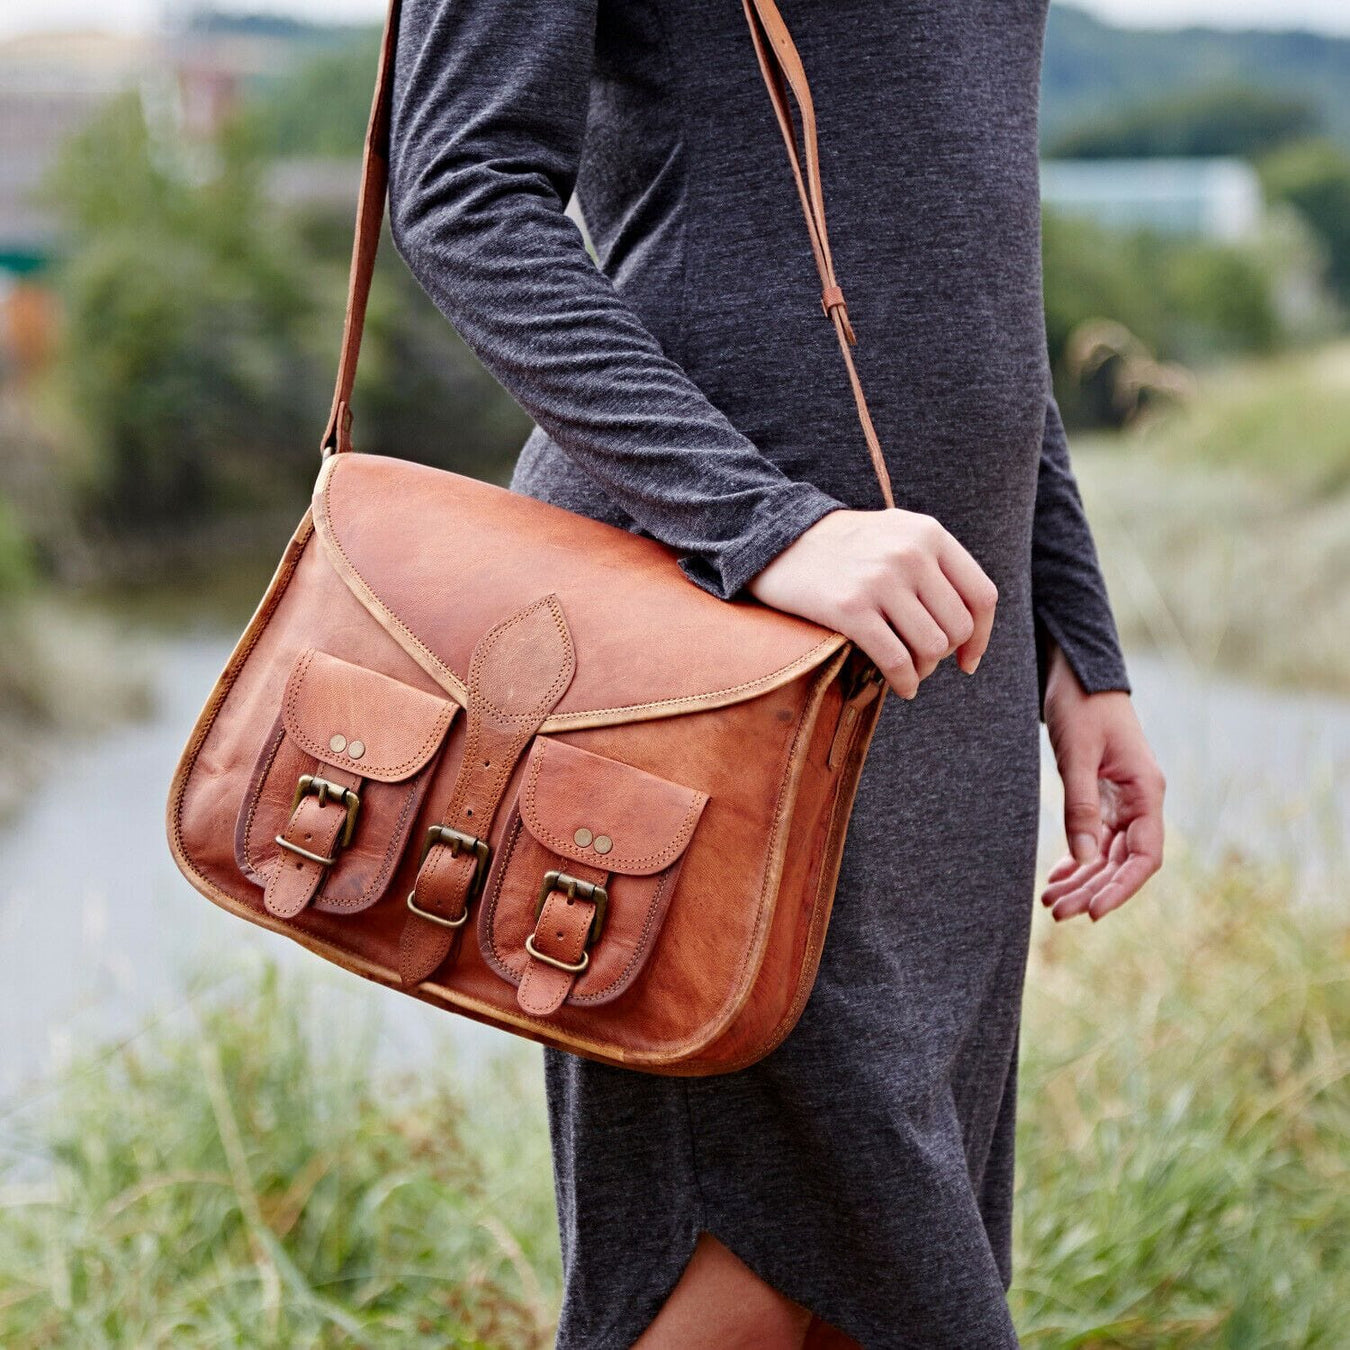 Genuine leather wallet bags for women - Archives | Der Lederhandler